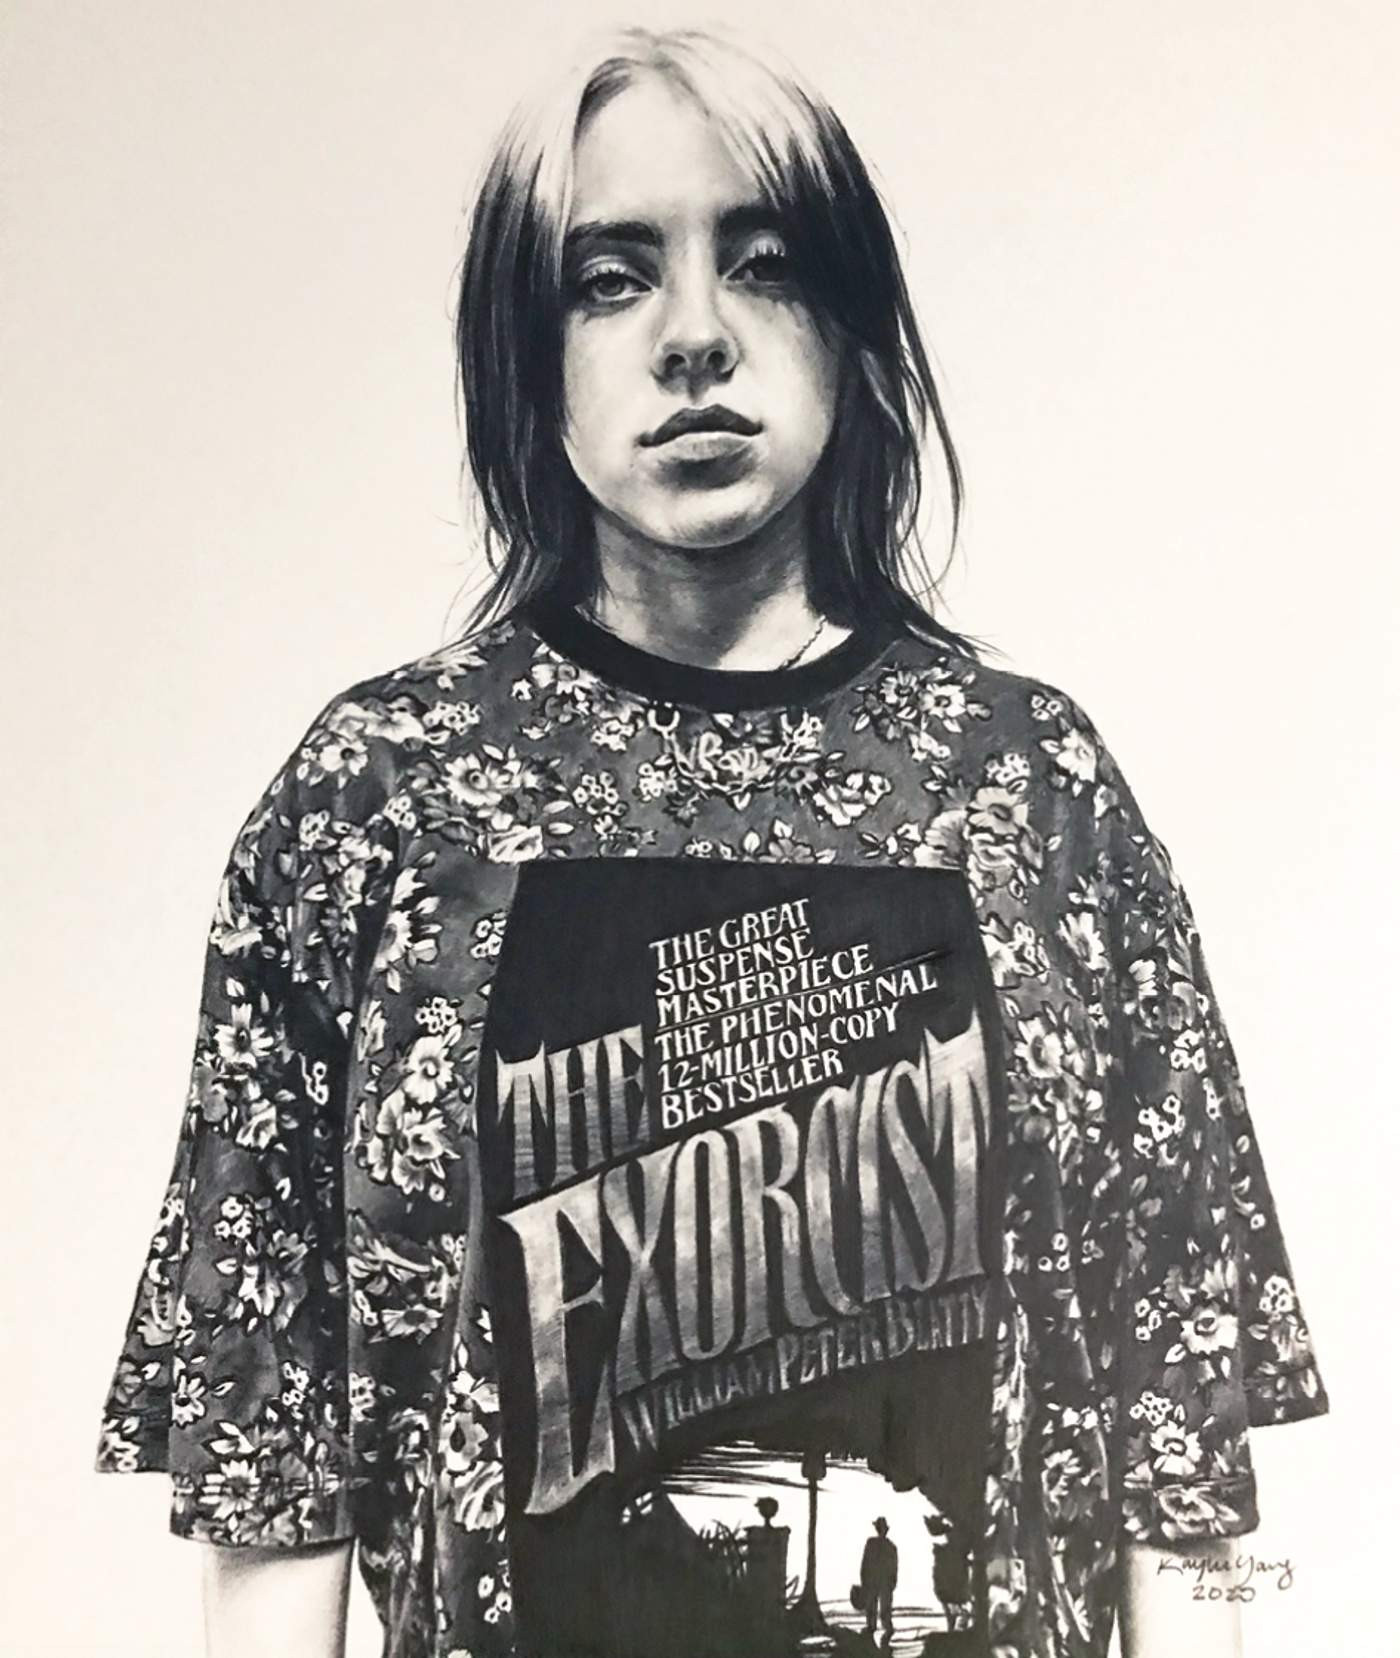 Рисунок авторства 20-летней Кейли Янг из США
Фото: Vogue USA